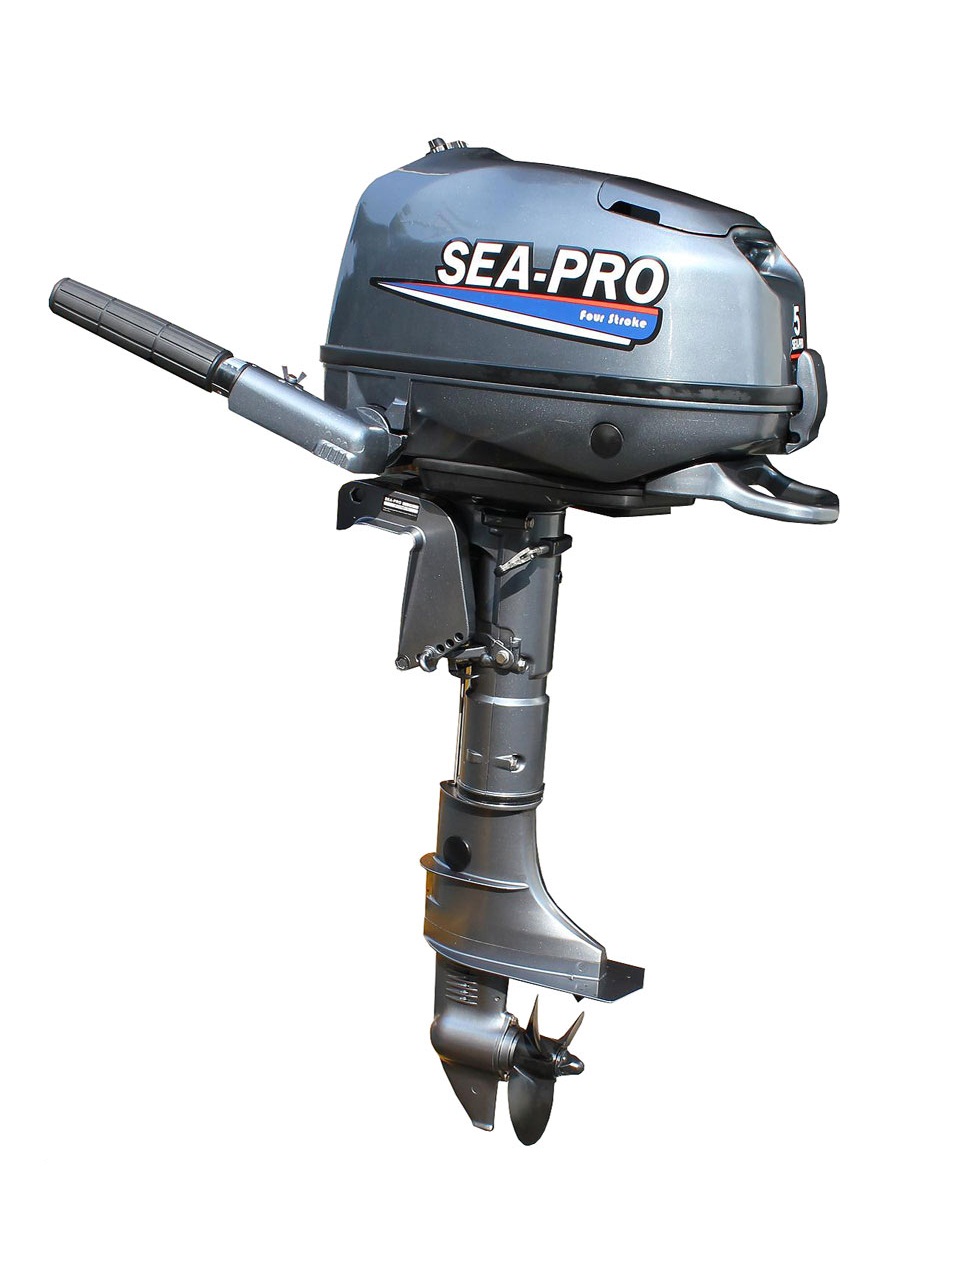 Мотор 4 тактный 9.8. Лодочный мотор Sea-Pro f 4s. Sea-Pro мотор Лодочный t15 (s). Мотор Sea-Pro f 5s. Лодочный мотор Sea-Pro t5/s/Tarpon.